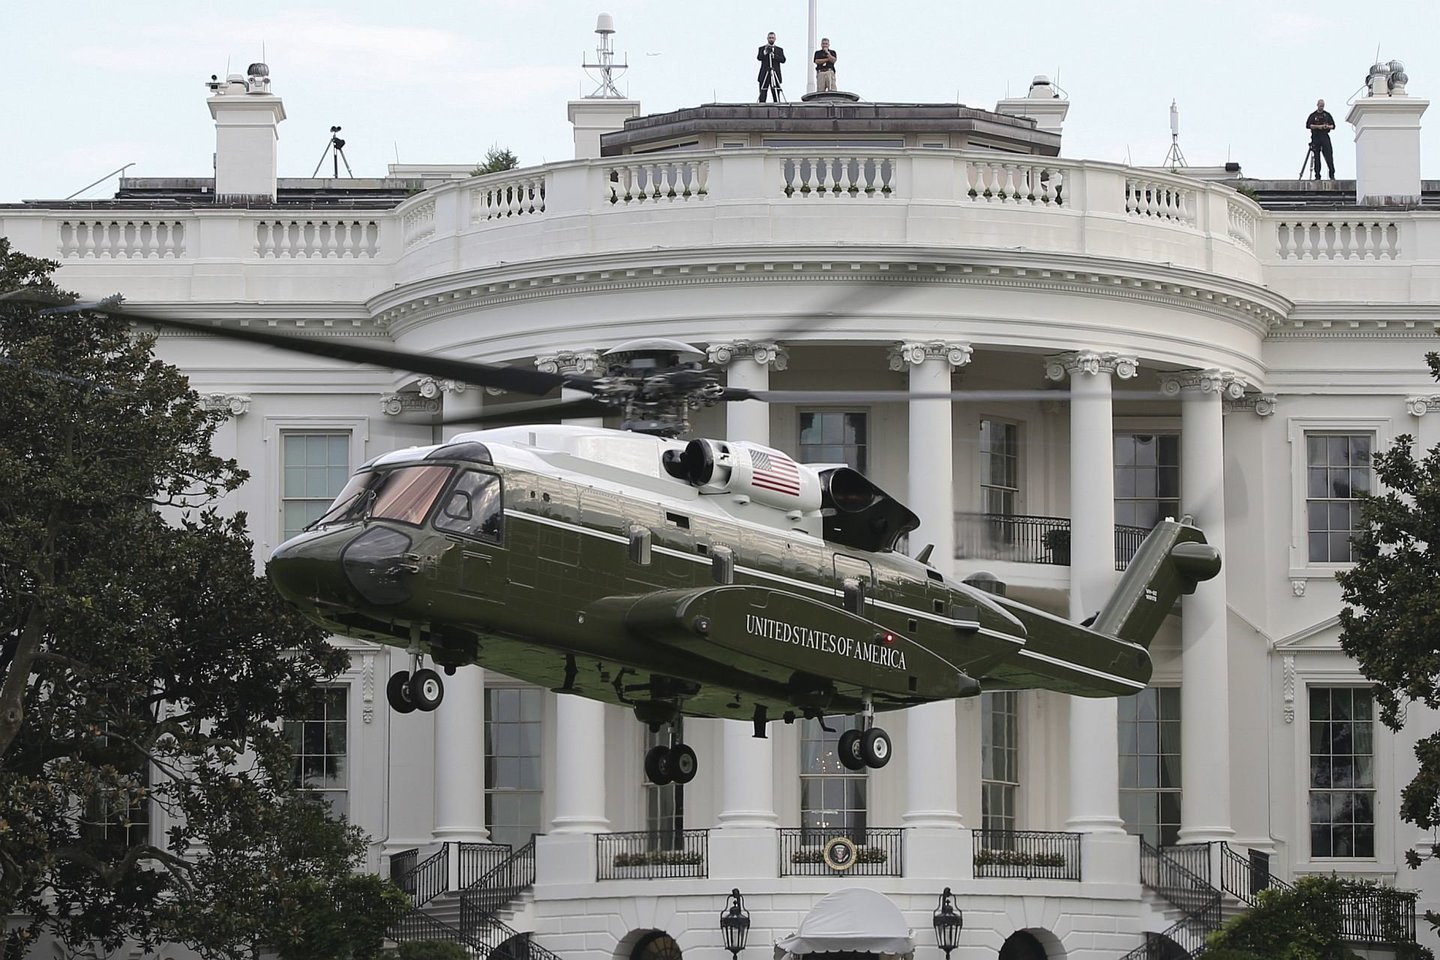  JAV laivynas pasirašė sutartį su sraigtasparnių gamintoju „Sikorsky“ dėl naujų prezidentinių sraigtasparnių VH-92A pirkimo.<br> Wikimedia commons